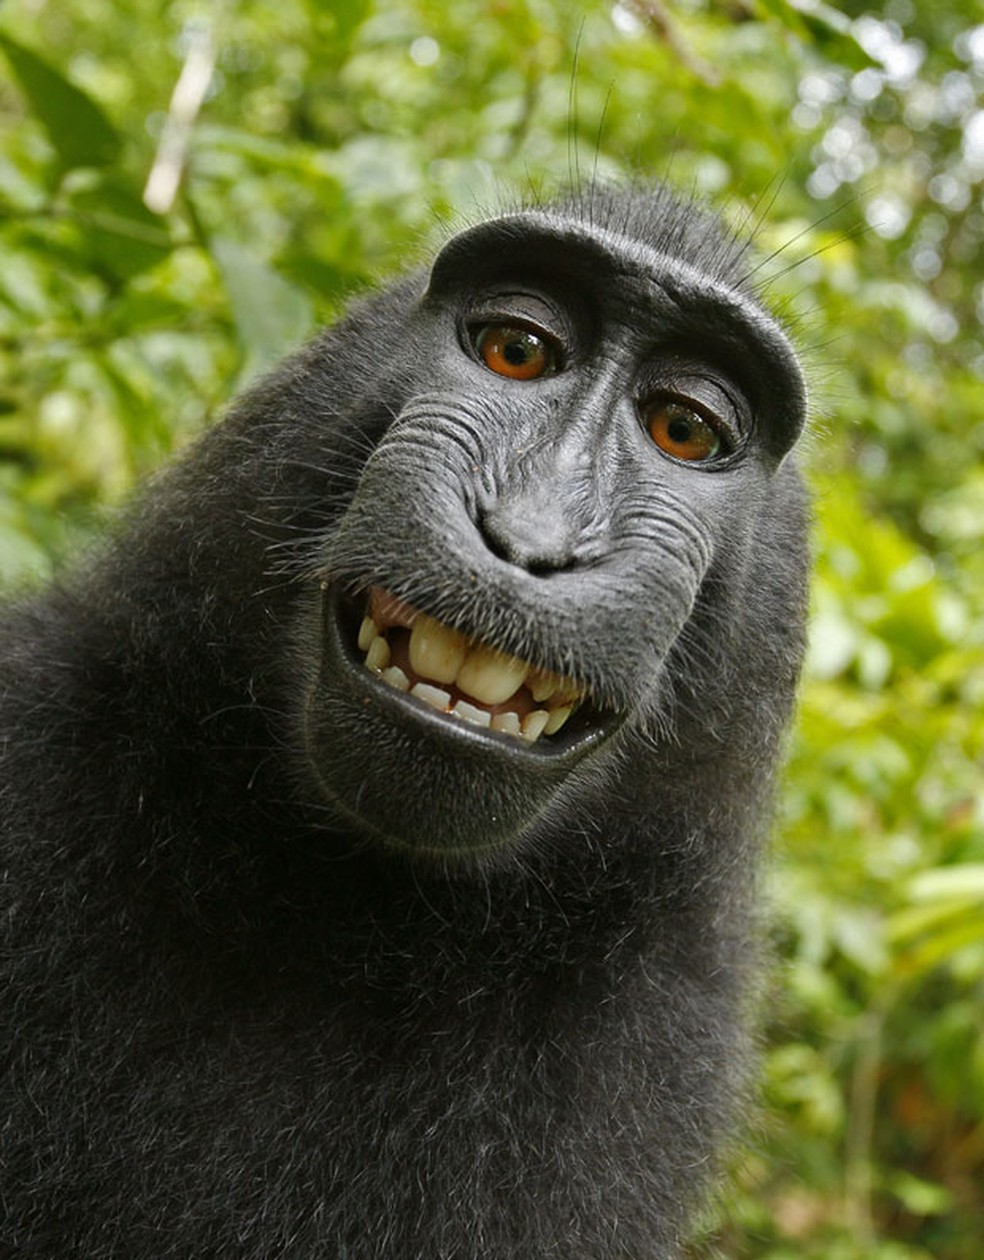 Em julho de 2011, um fotógrafo se surpreendeu com as imagens feitas por um macaco da espécie Macaca nigra, que acabou fazendo um 'sorridente' autorretrato em um pequeno parque nacional na ilha de Sulawesi, na Indonésia. (Foto: Wild Monkey/David Slater/Caters News)